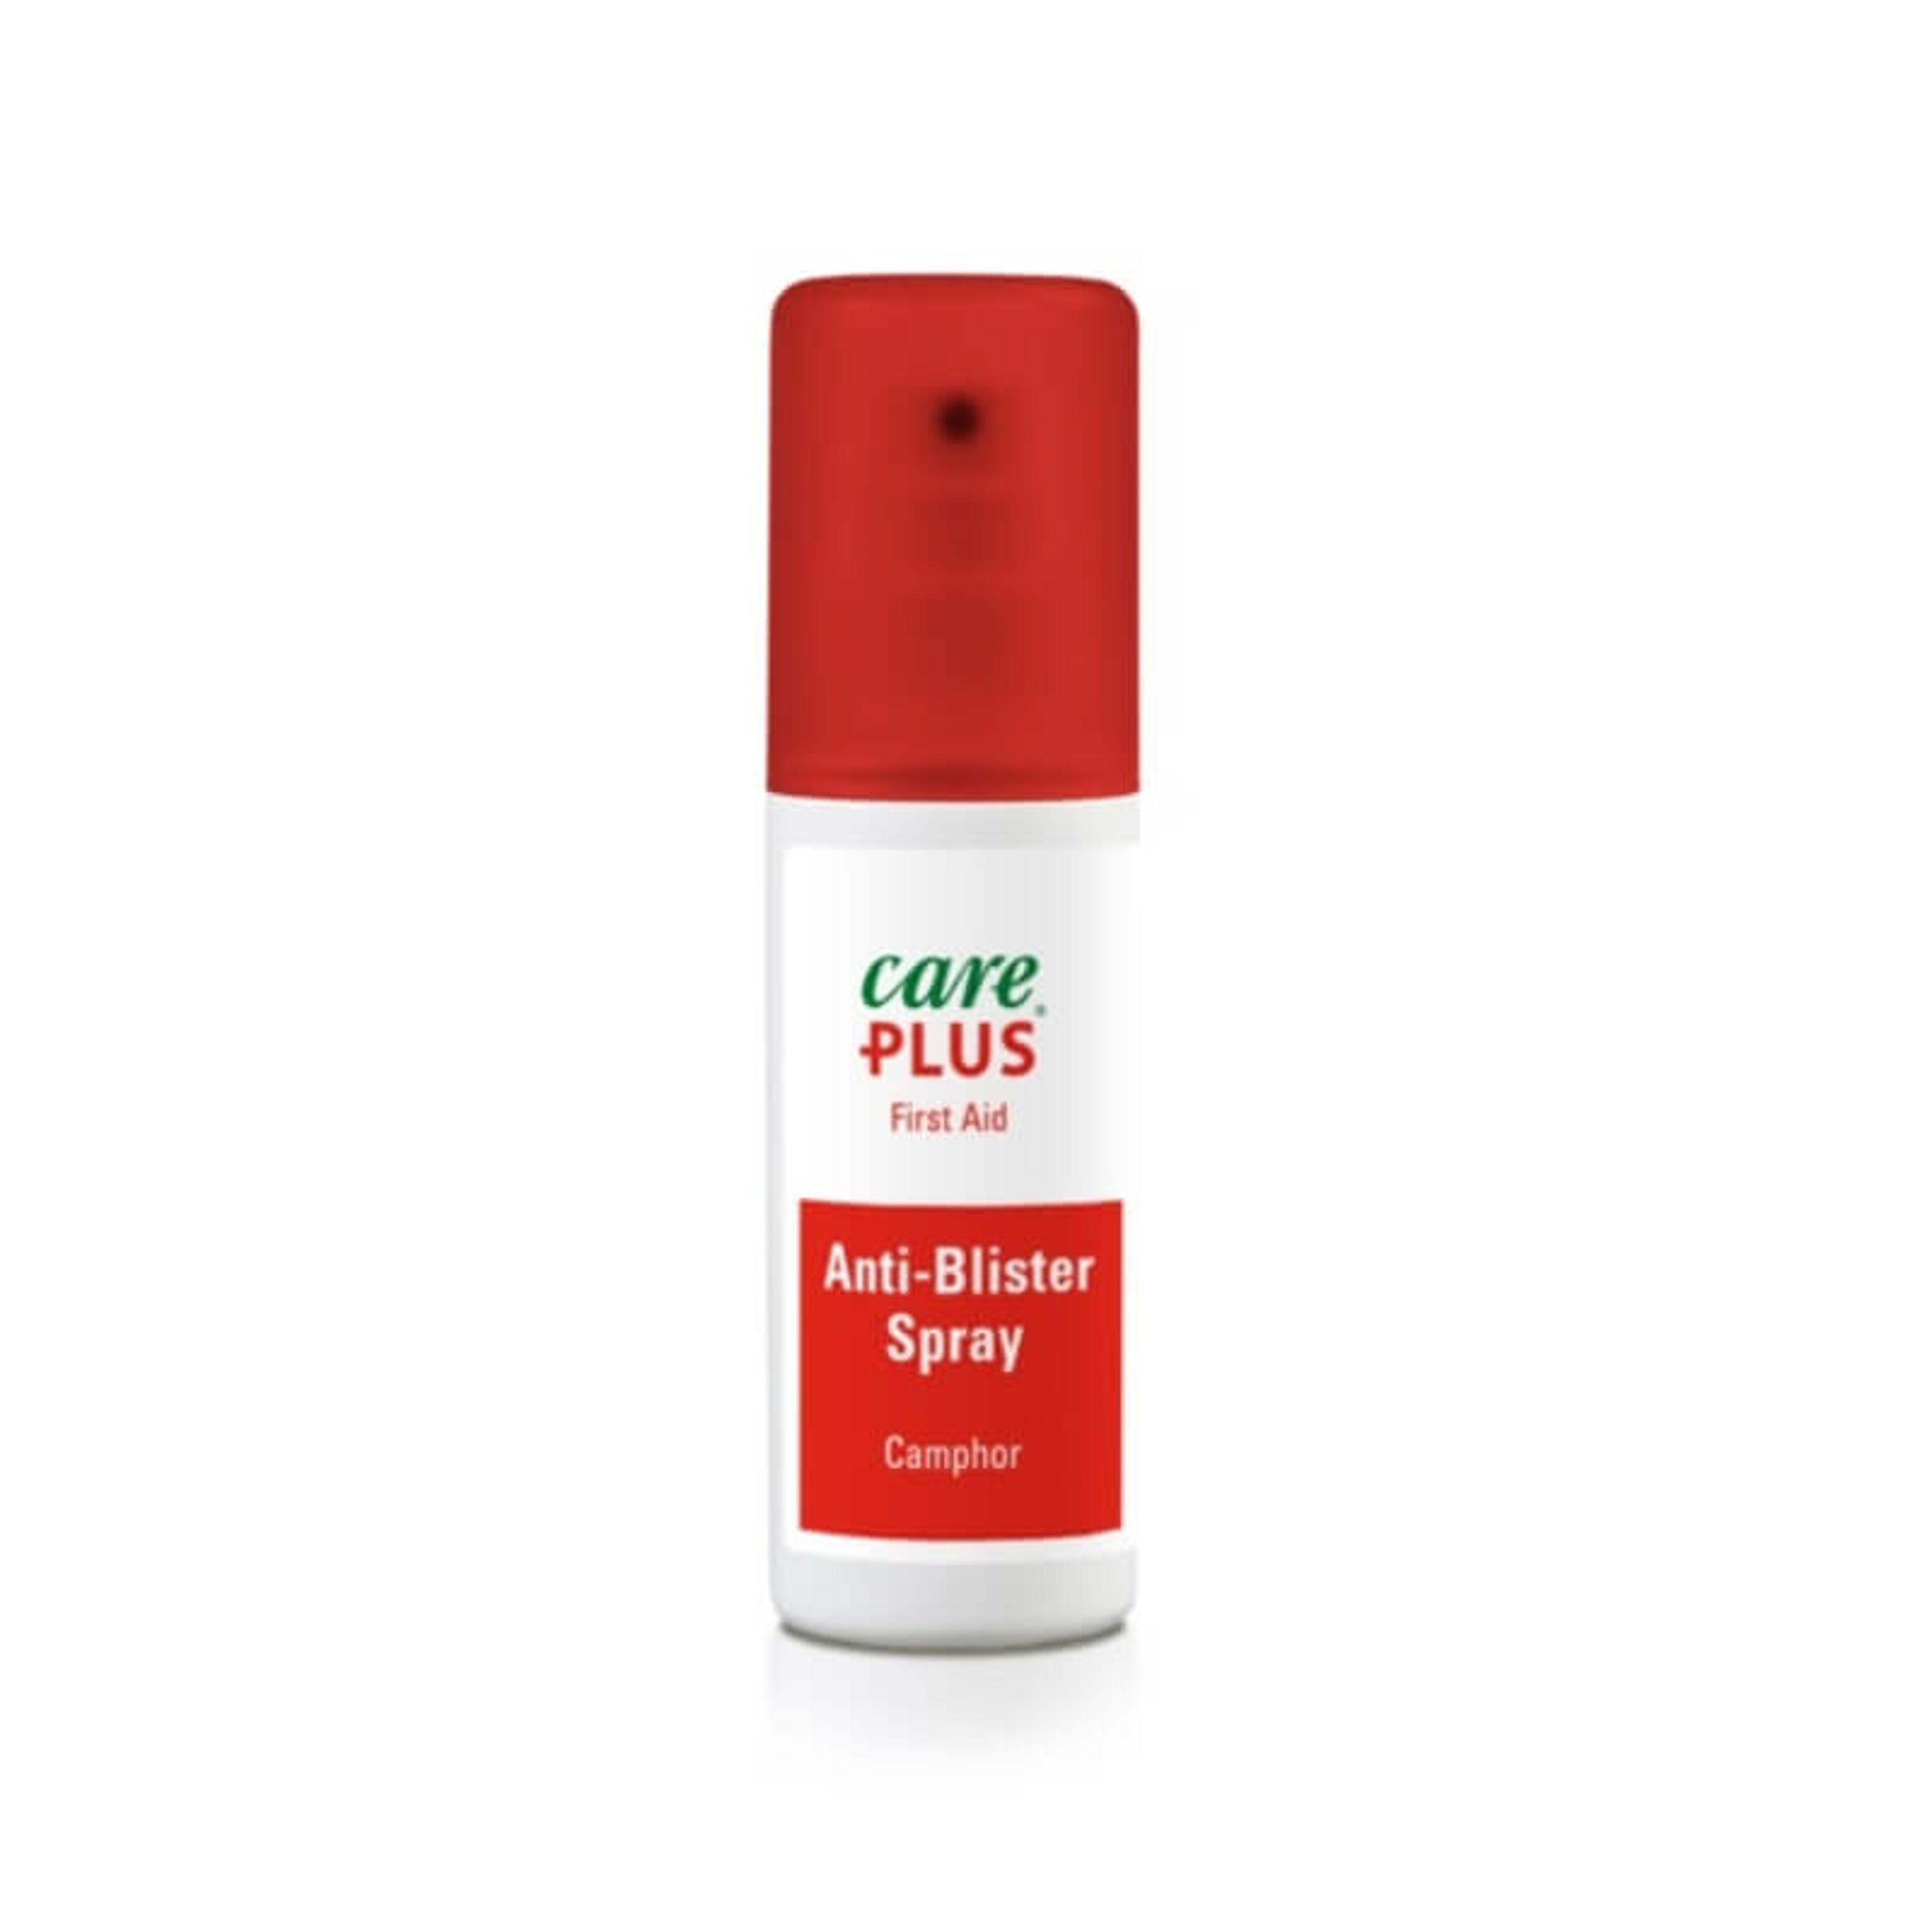 Care Plus Anti-Blister Spray - 50ml